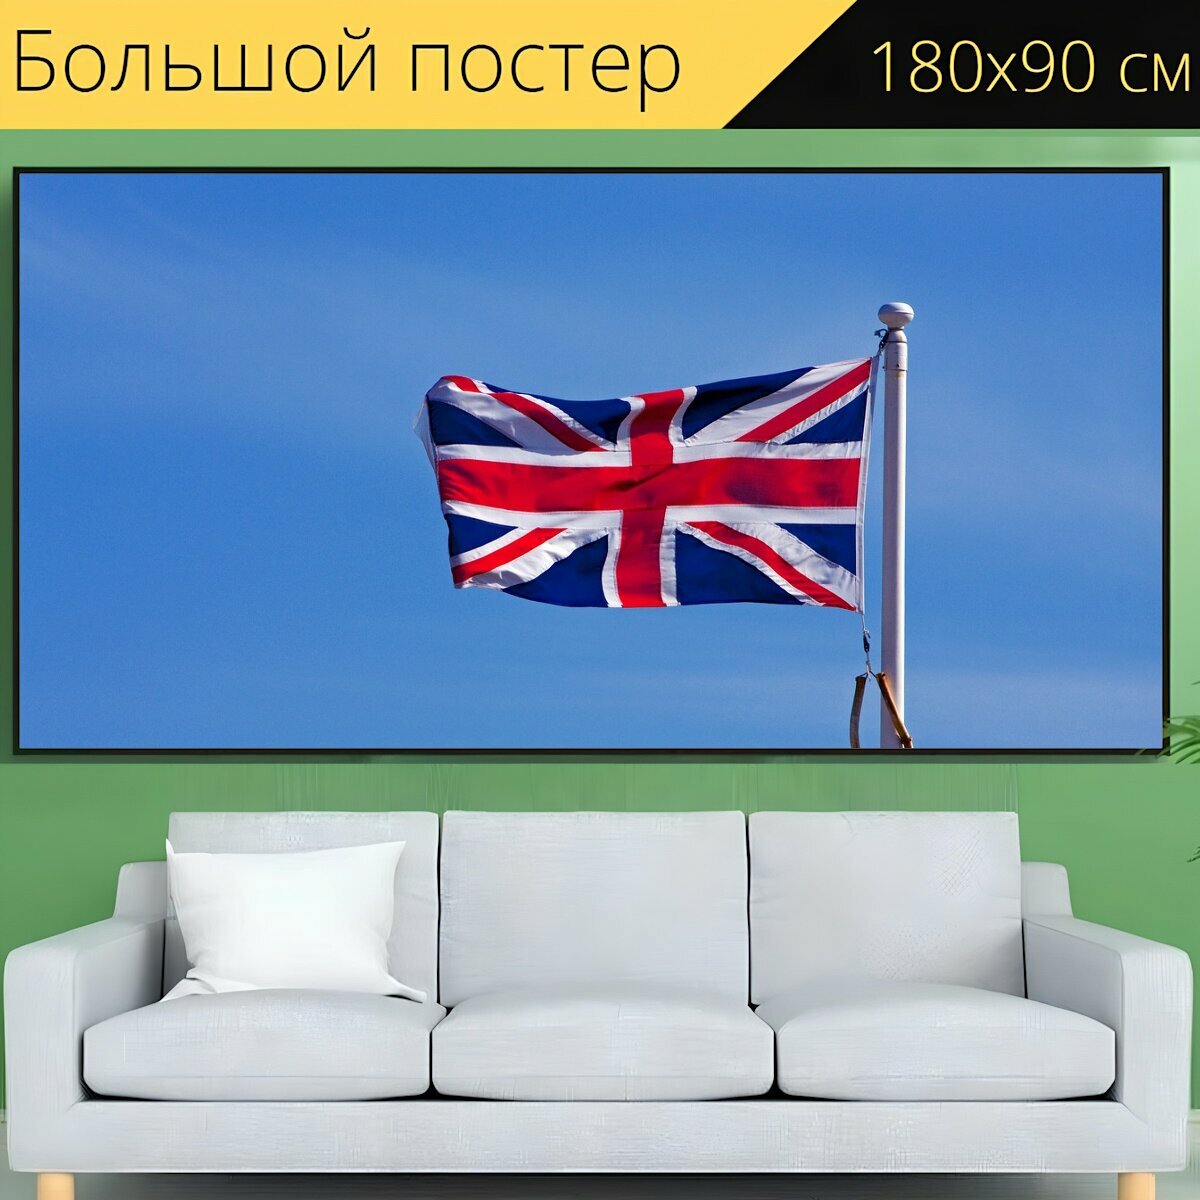 Большой постер "Флаг, юнион джек, британский" 180 x 90 см. для интерьера